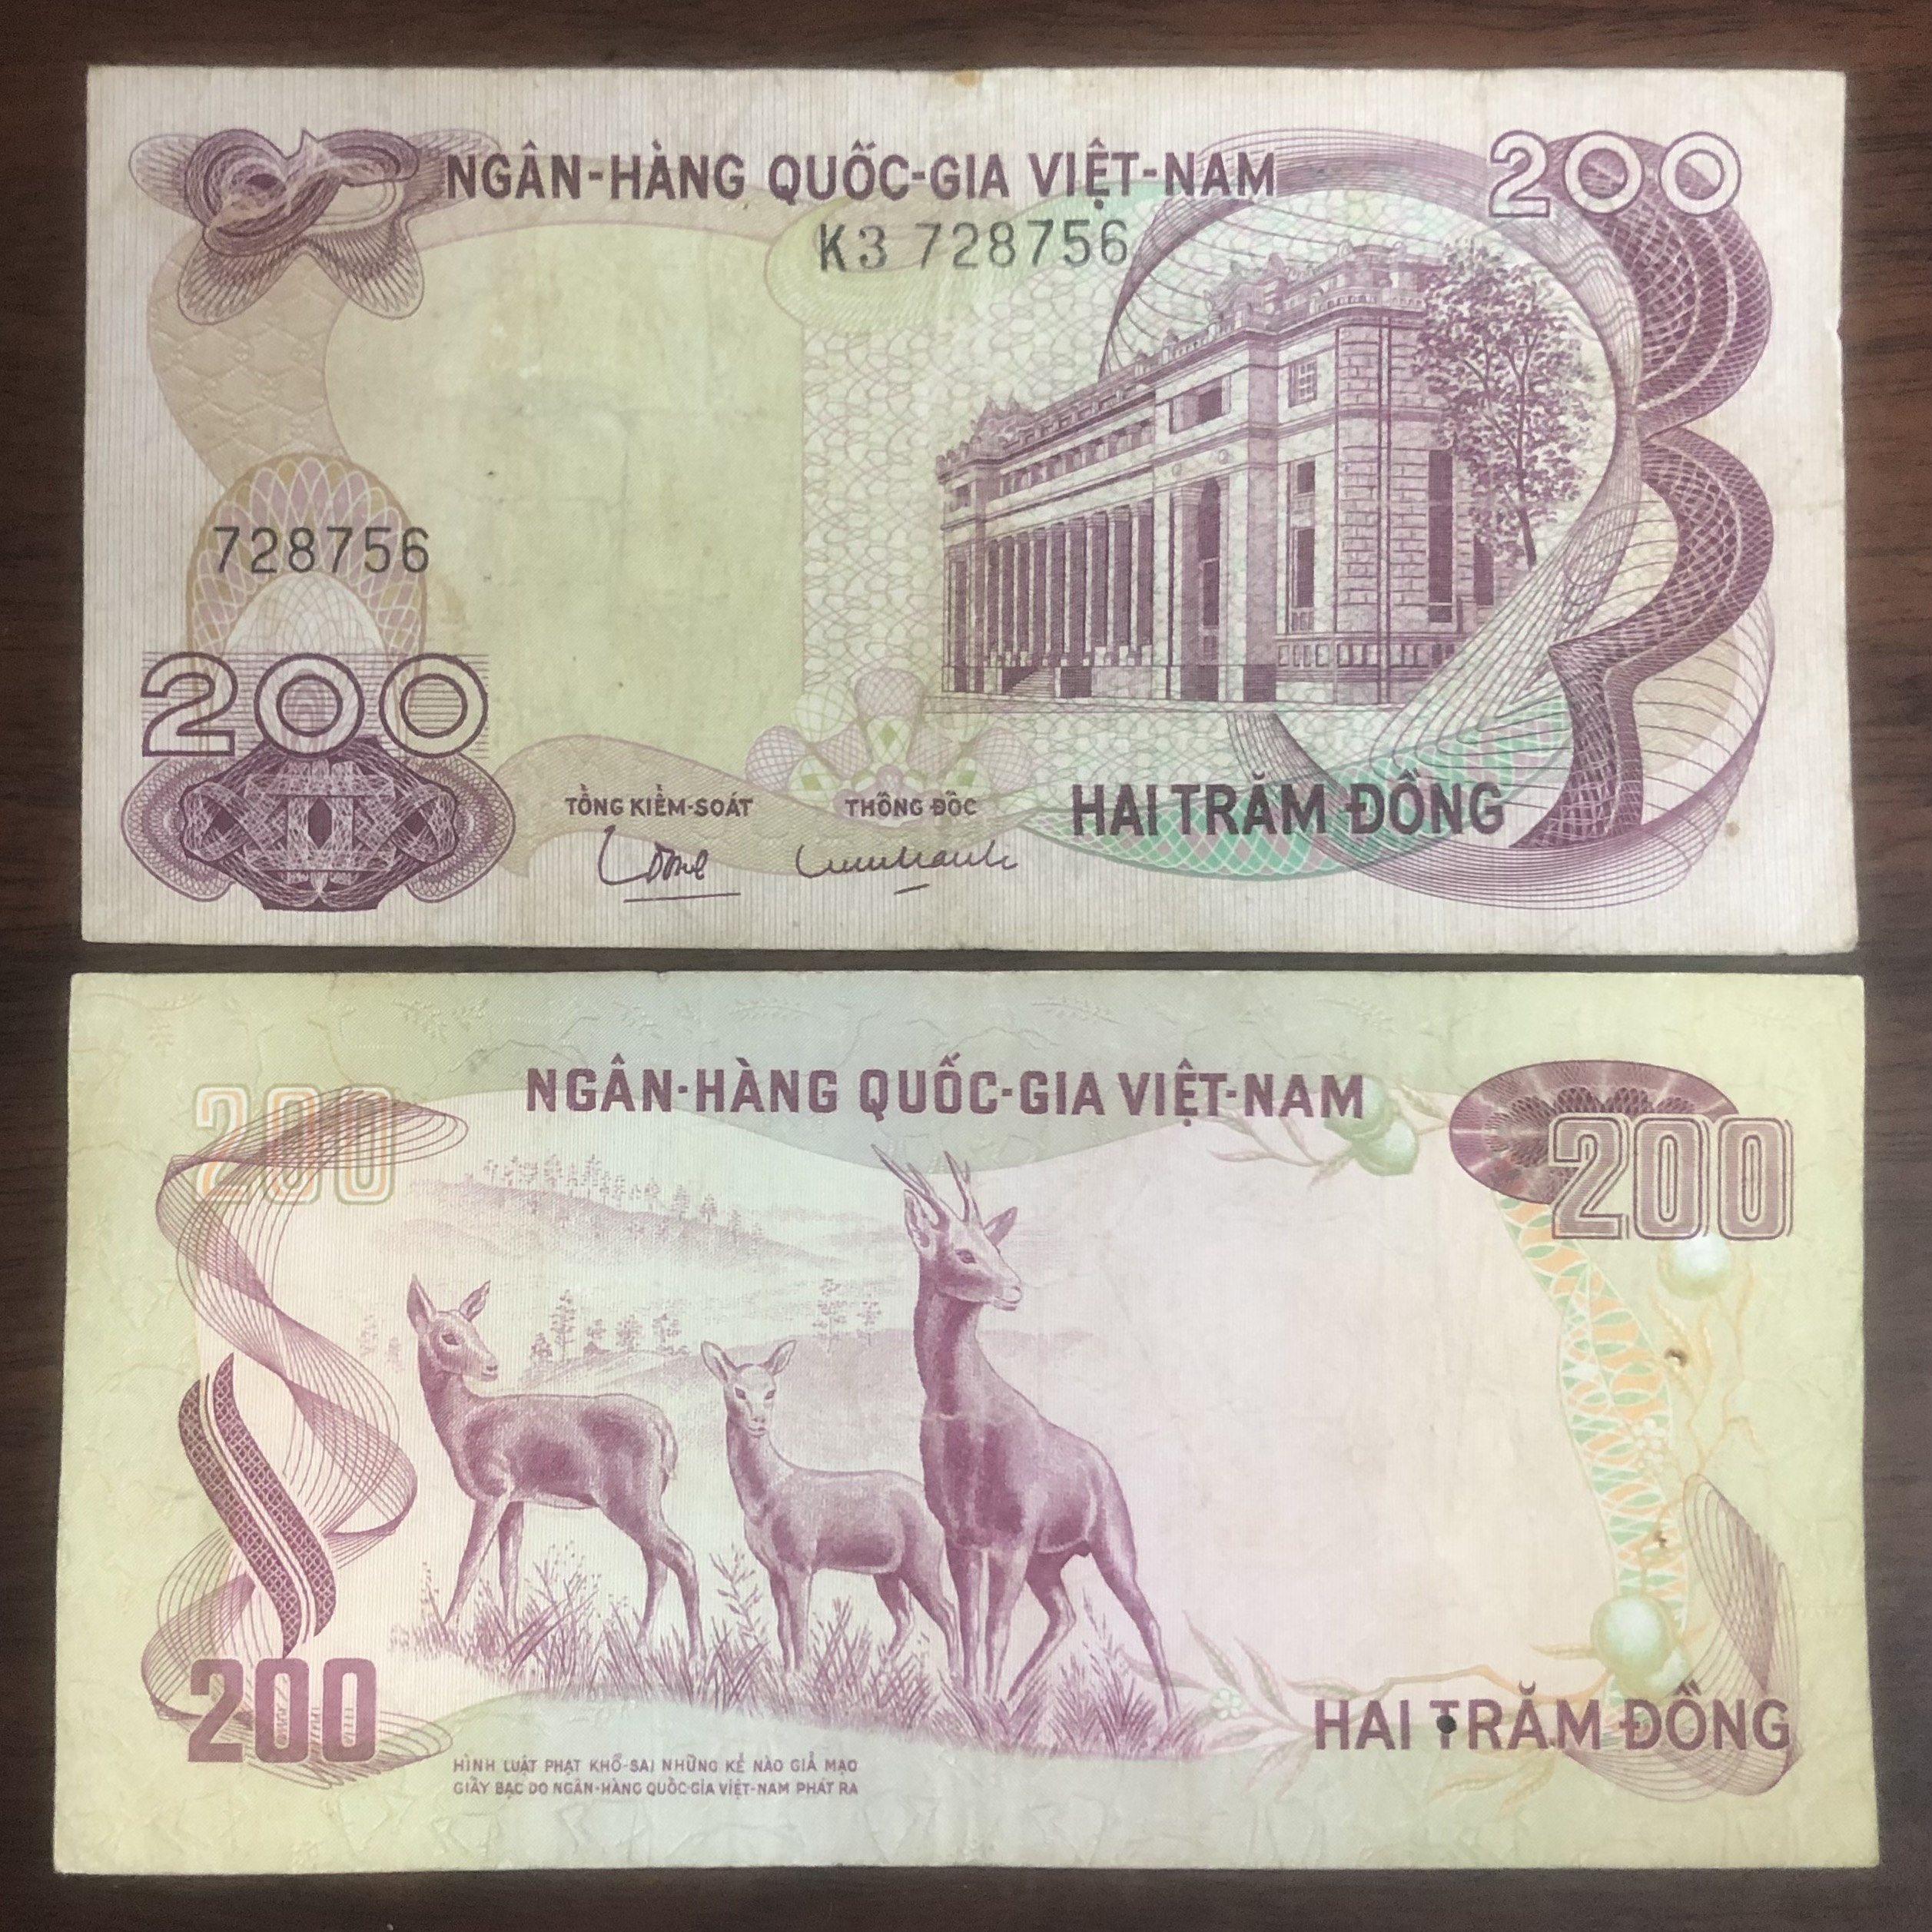 Bộ 2 tờ tiền Việt Nam mệnh giá 200 đồng phát hành khác giai đoạn